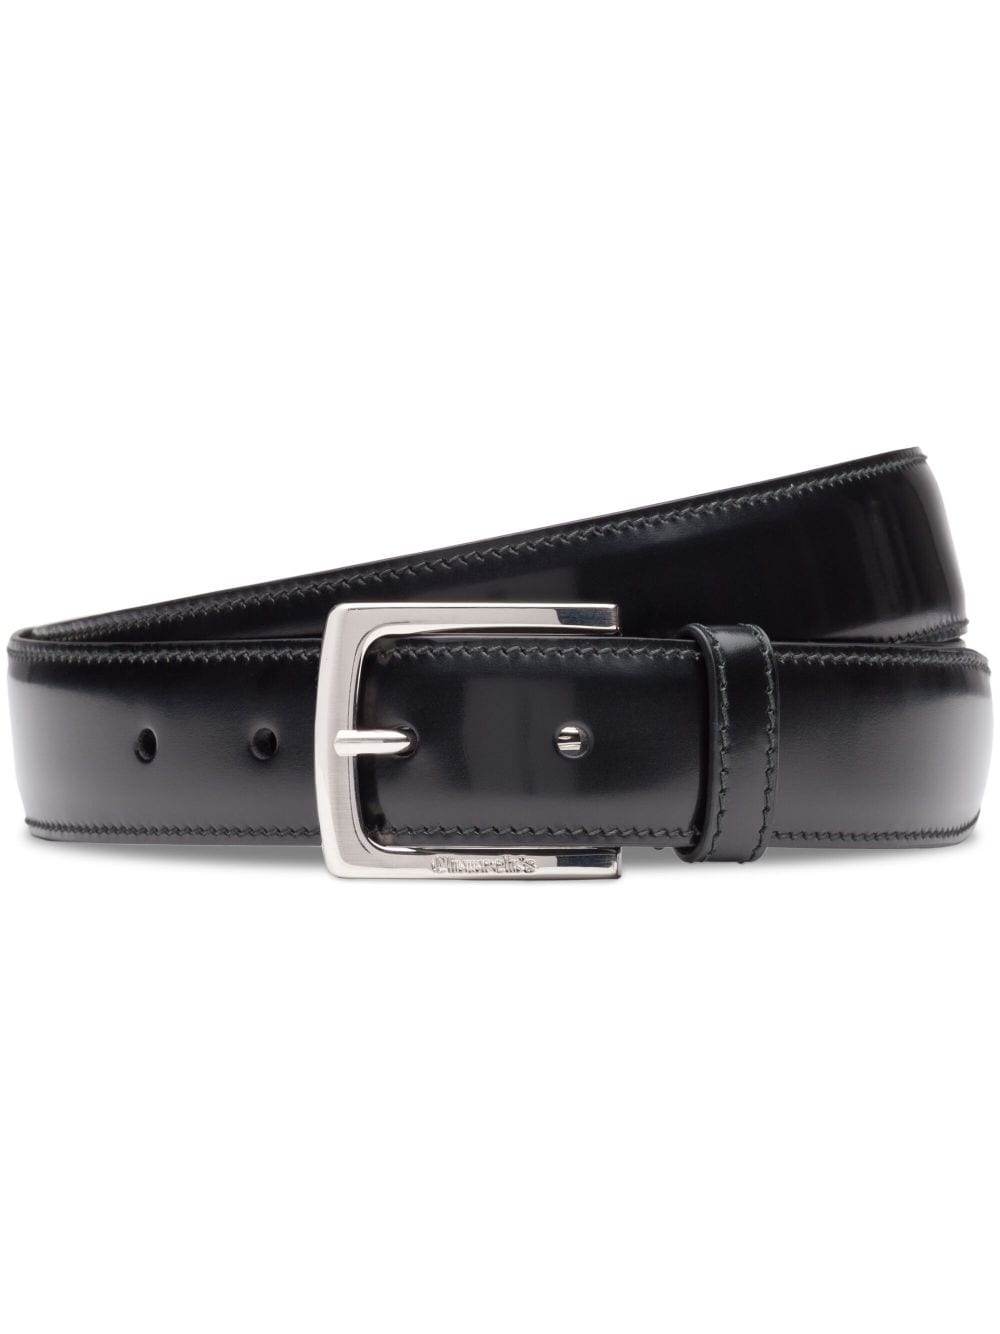 Church's polished buckle-fastening leather belt - Black von Church's